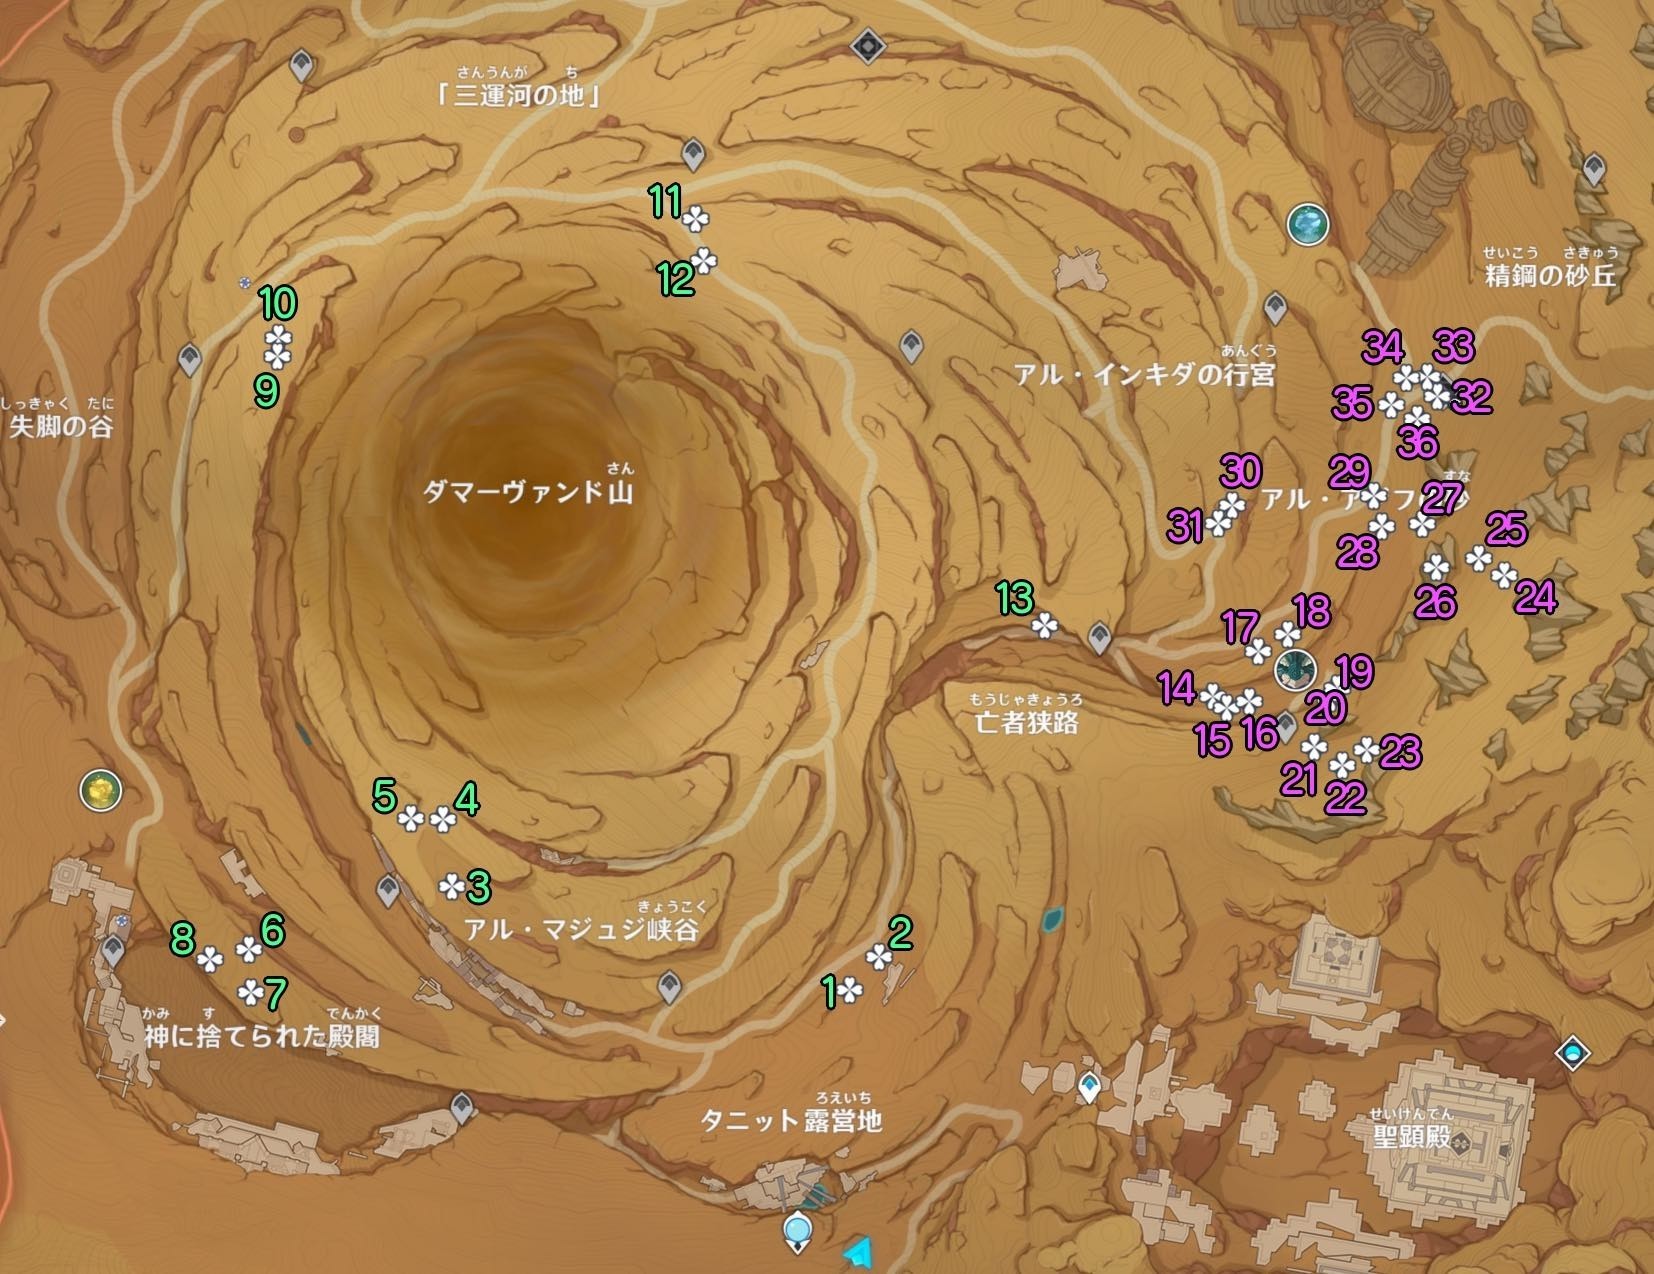 《原神》3.4沙脂蛹收集地图点位及分布 沙脂蛹怎么获得_地下区域